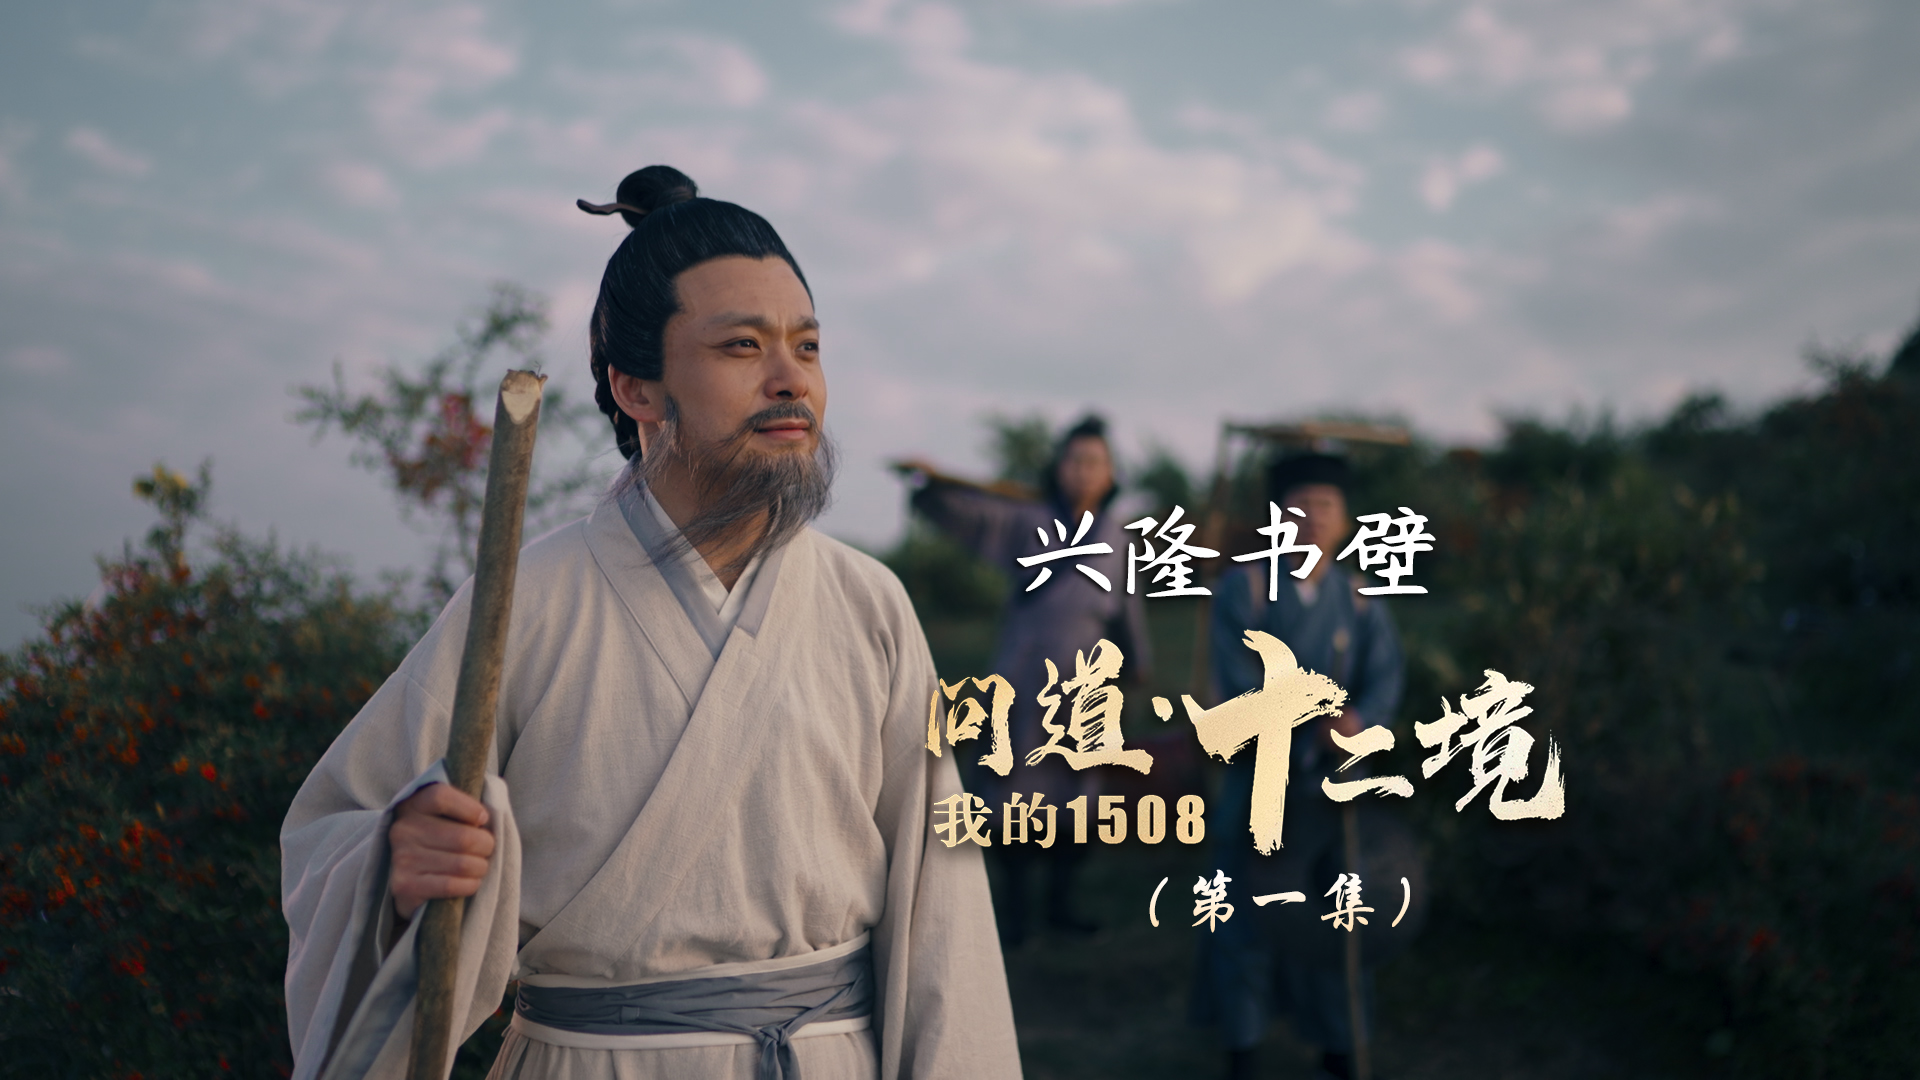 《我的1508·问道十二境》丨贵州省首届社会主义核心价值观主题微电影(微视频)征集展示活动作品